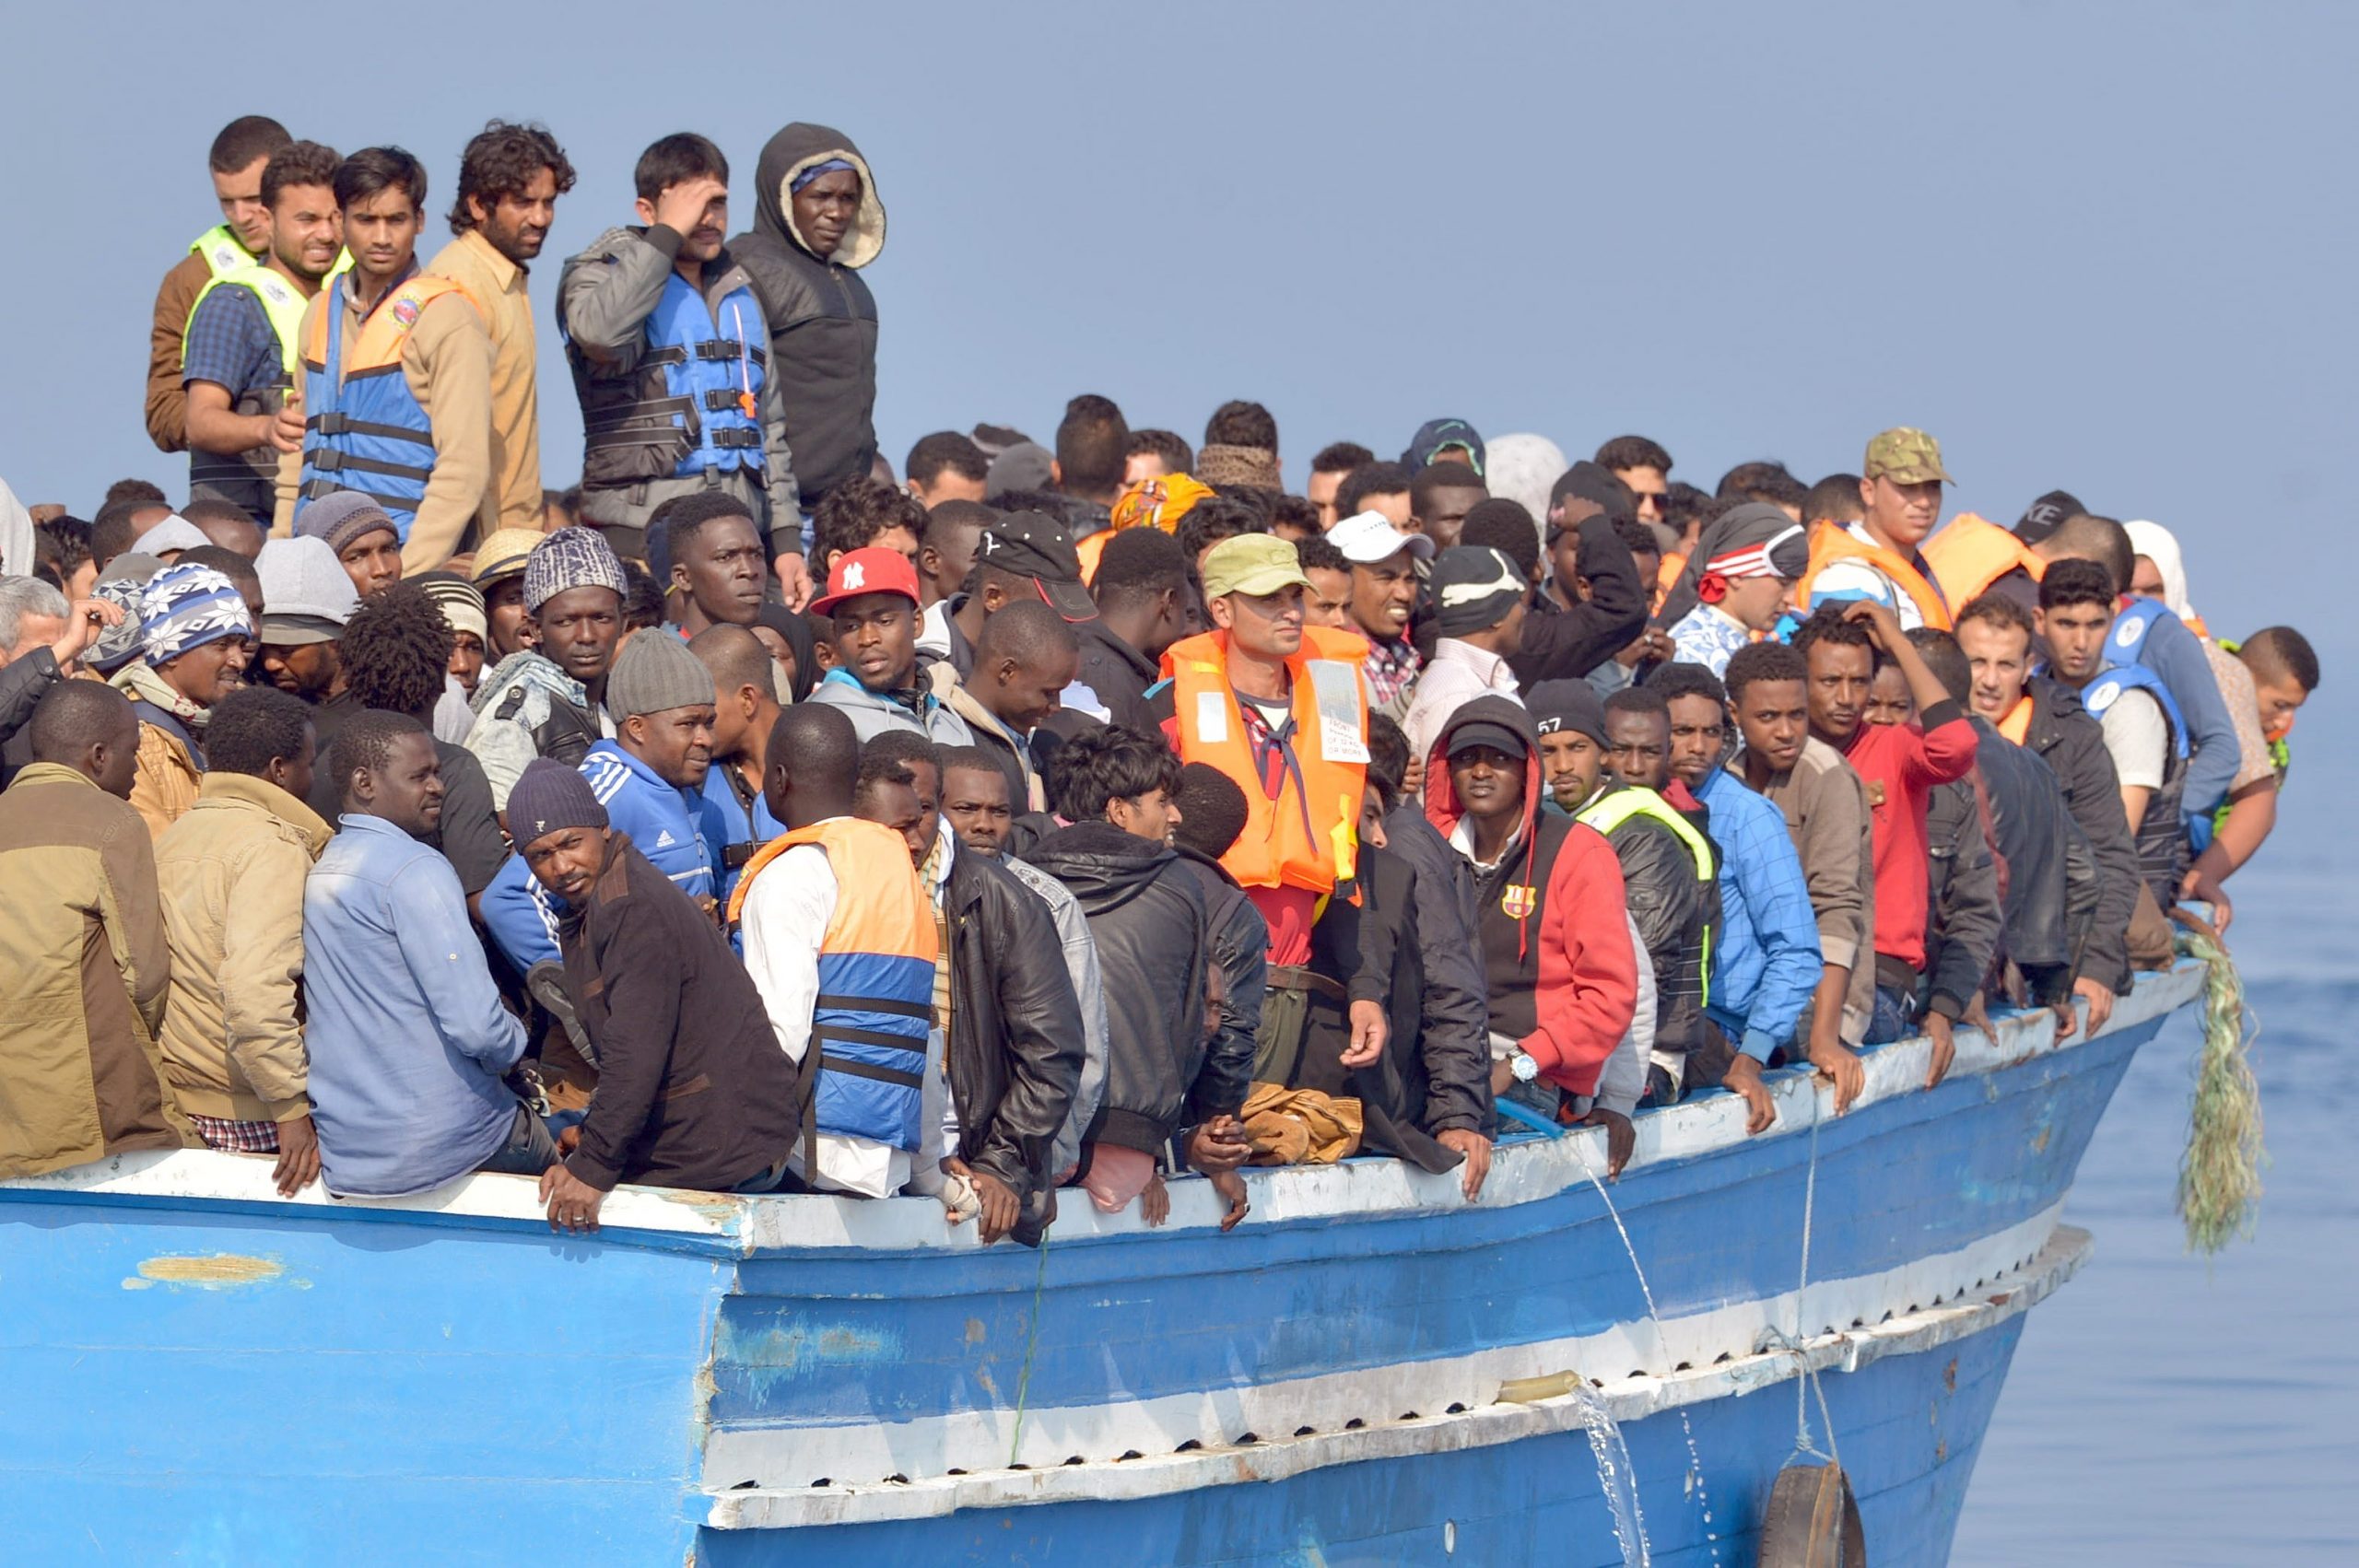 Vittime del Mediterraneo, ora si darà un volto a donne e bambini naufragati